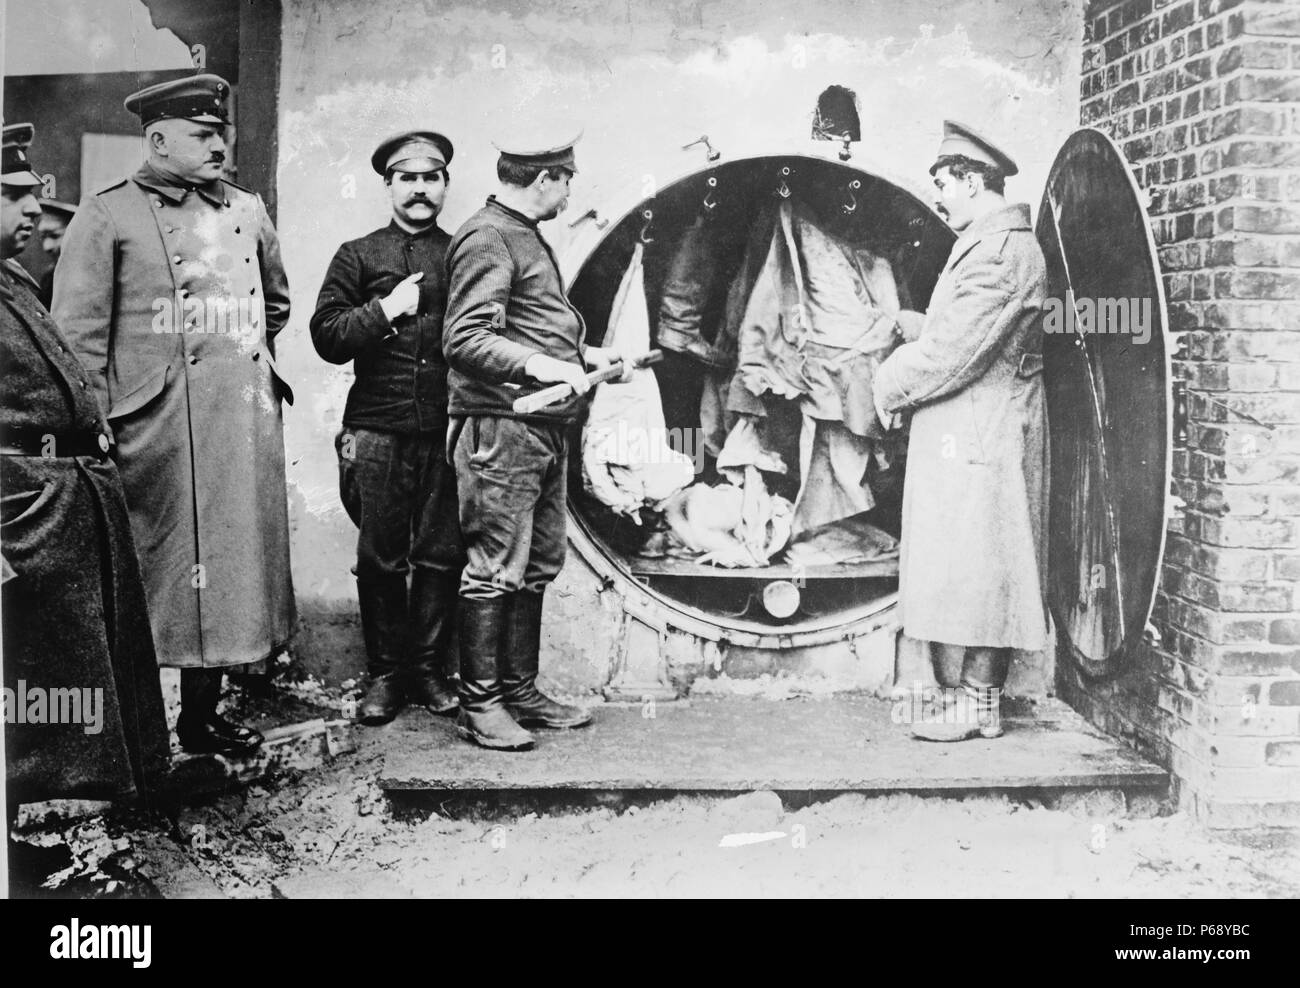 Photographie de la désinfection des vêtements des prisonniers russes pendant la Première Guerre mondiale. Datée 1915 Banque D'Images